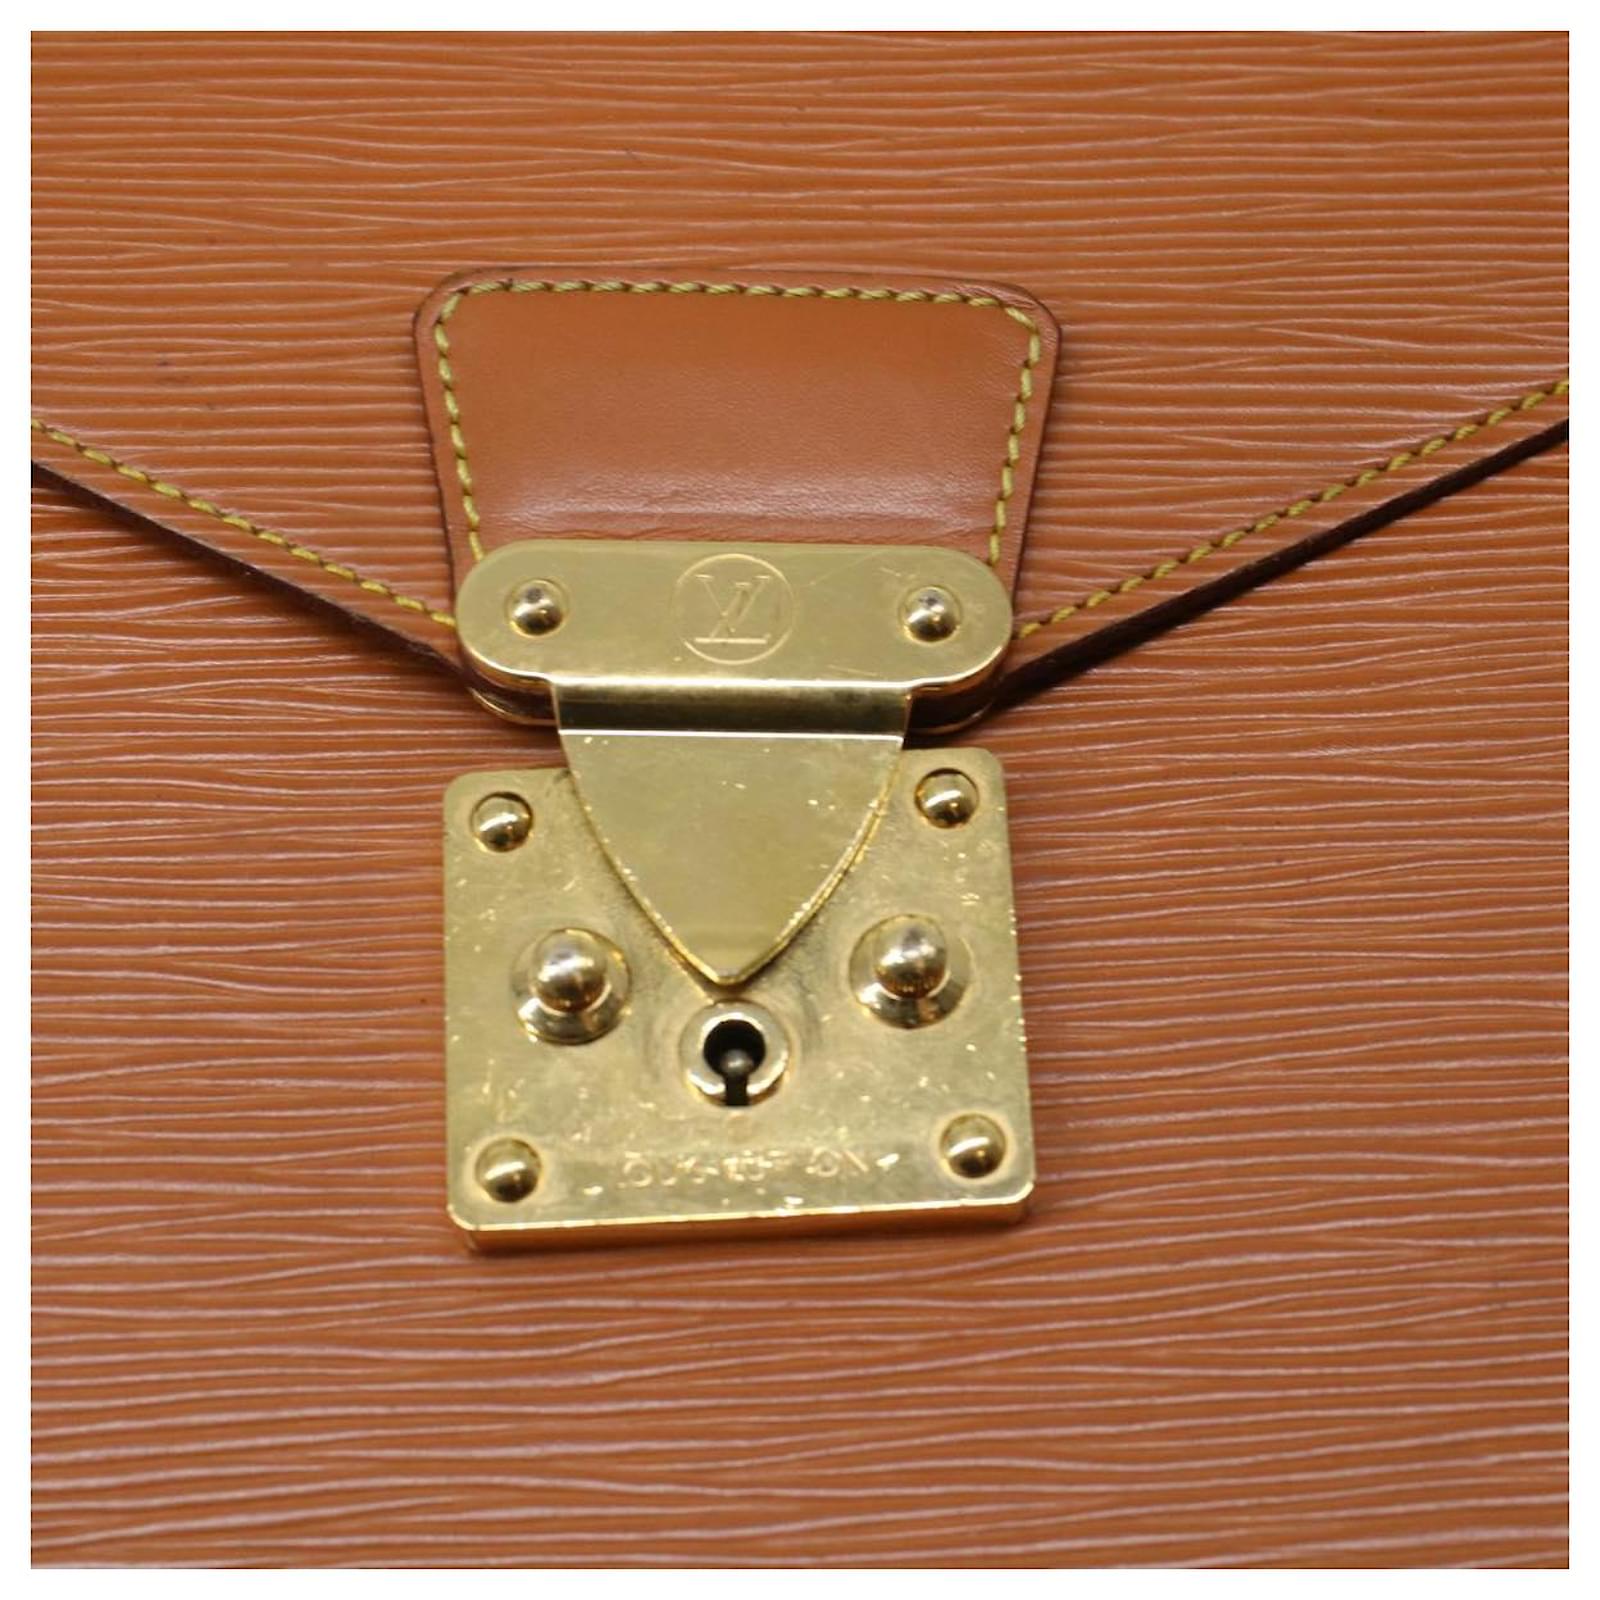 Louis Vuitton Porte Documents Bandouliere M54468 Epi Leather 2way Satchel  Bag